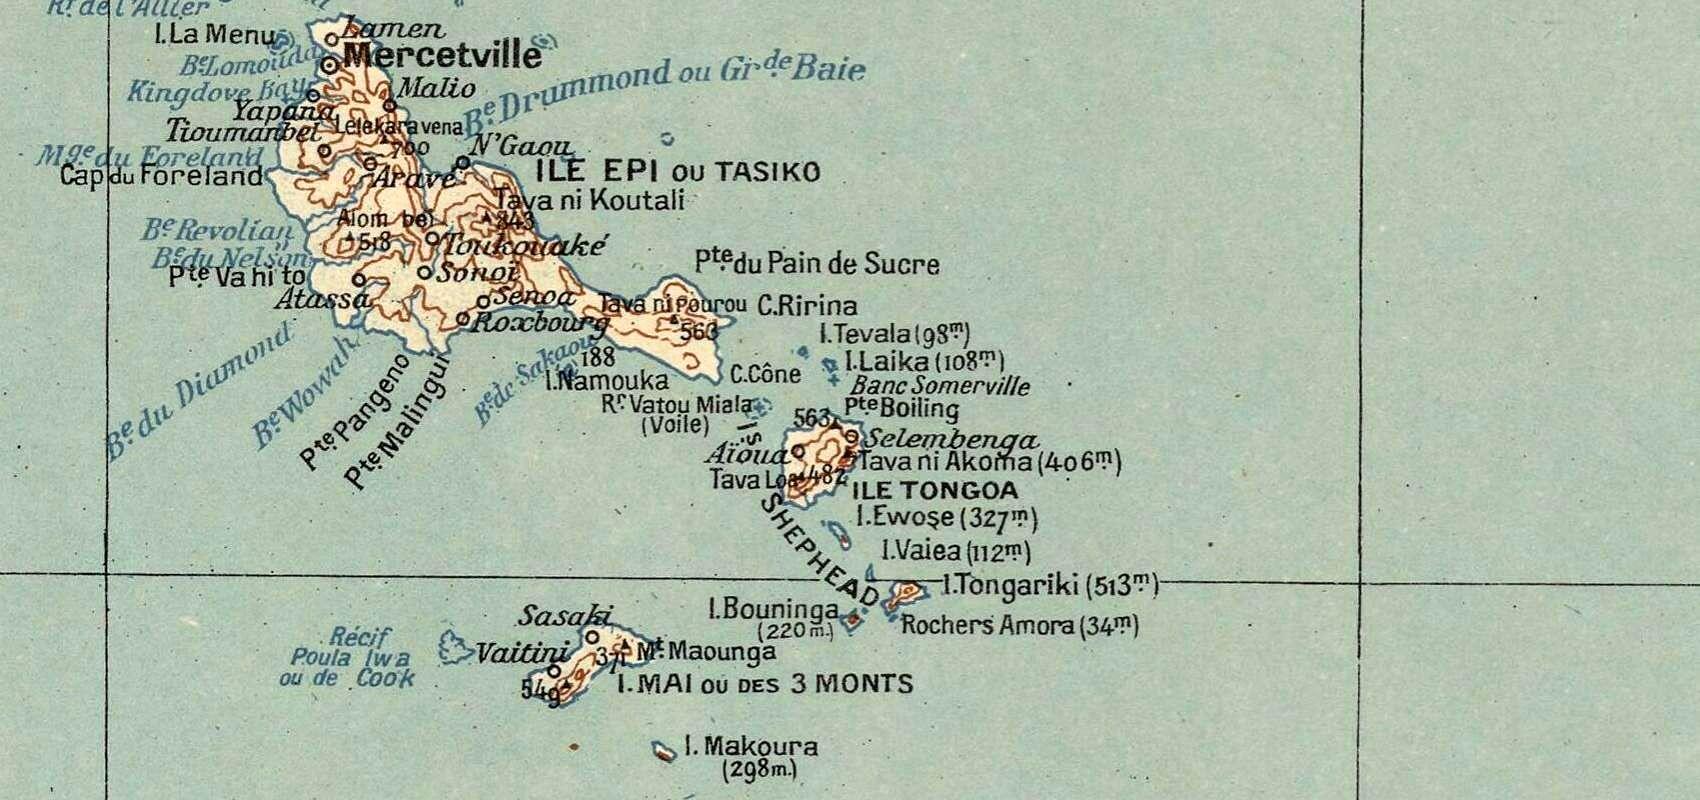 Détail de la carte de l'archipel des Nouvelles-Hébrides (Vanuatu) – Îles Epi ou Tasiko, Tongoa et Mai ou des 3 Monts - 1917 - BnF, département des Cartes et plans